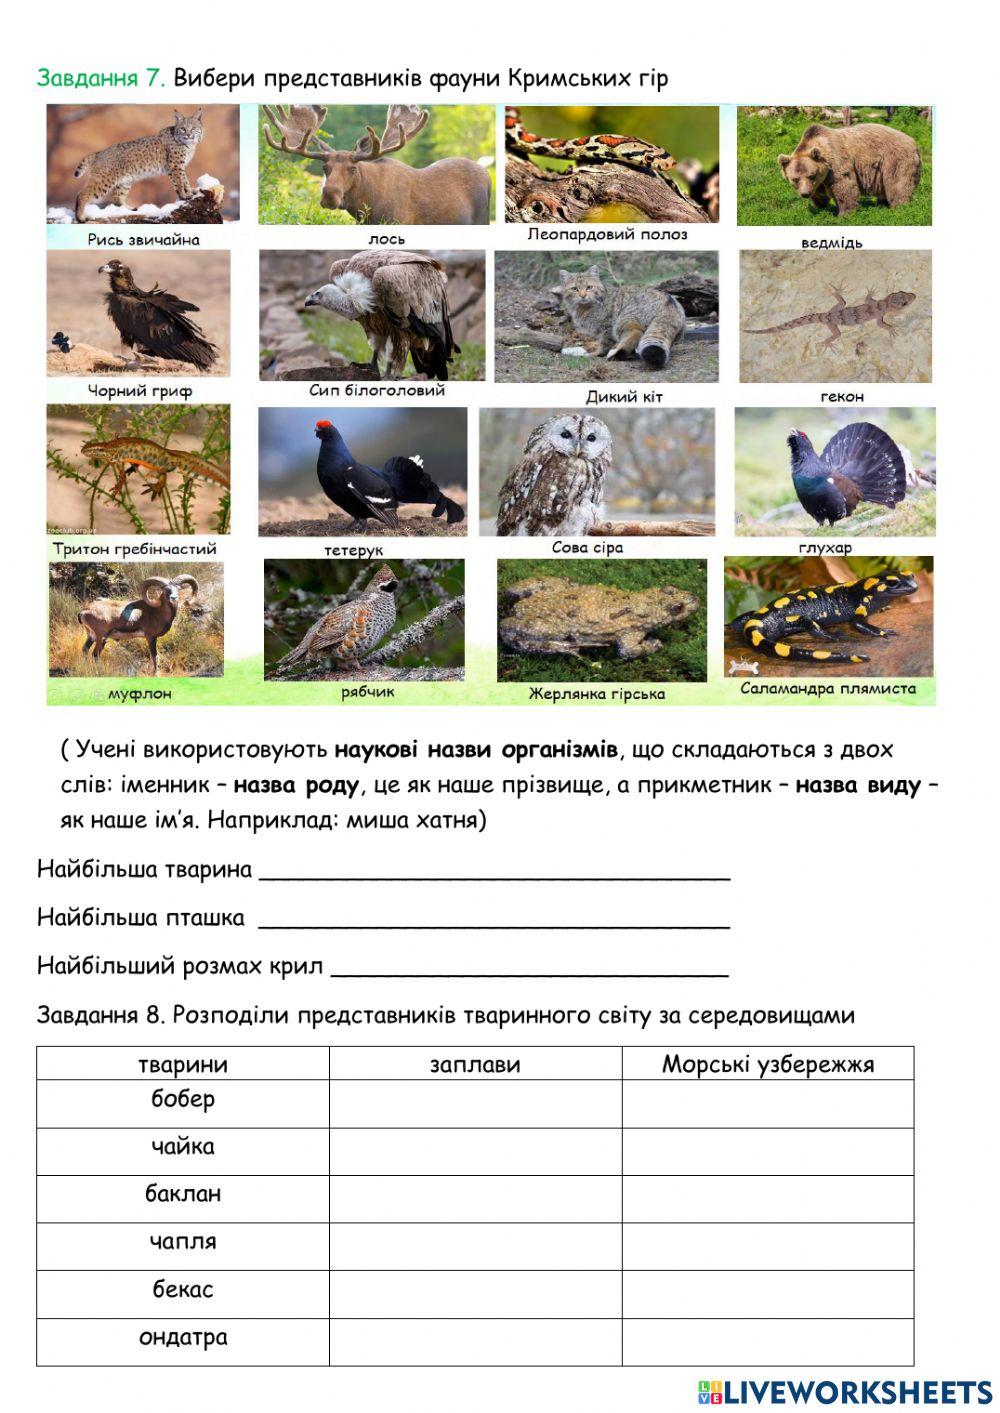 Тваринний світ України